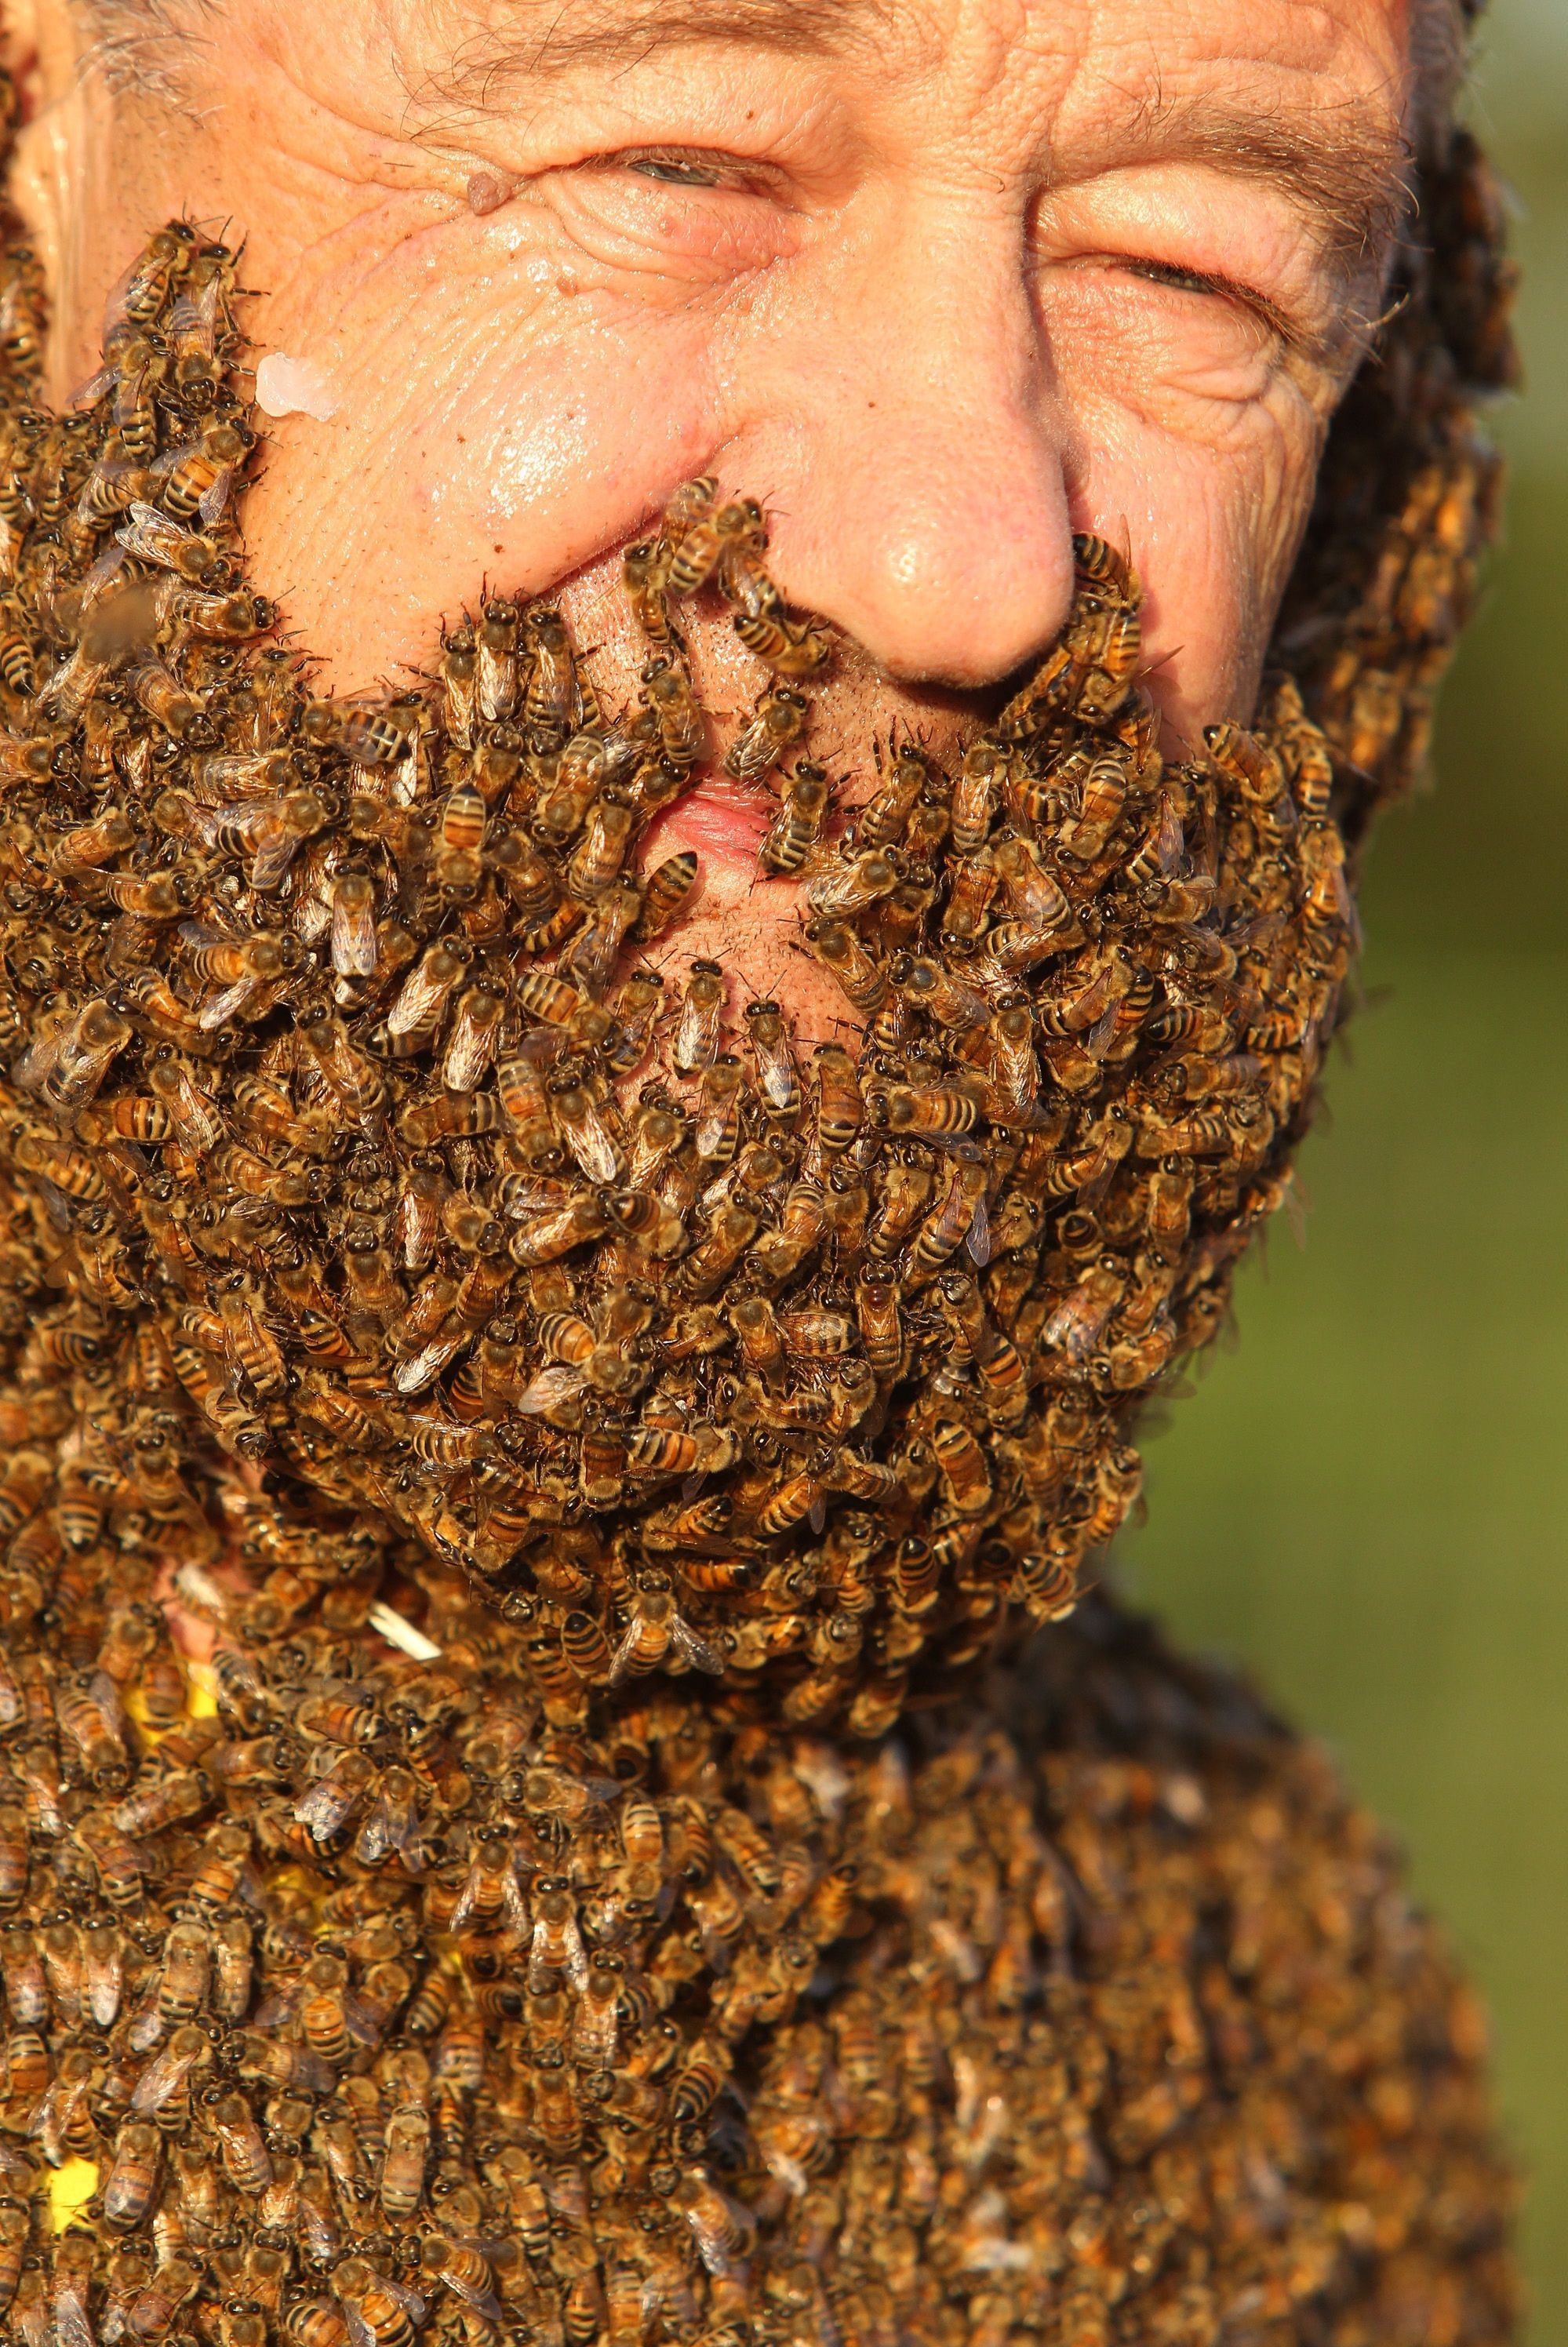 Concursul interzis celor slabi de inima. Ce s-a intamplat cu acest barbat dupa ce s-a lasat acoperit de sute de mii de albine - Imaginea 4